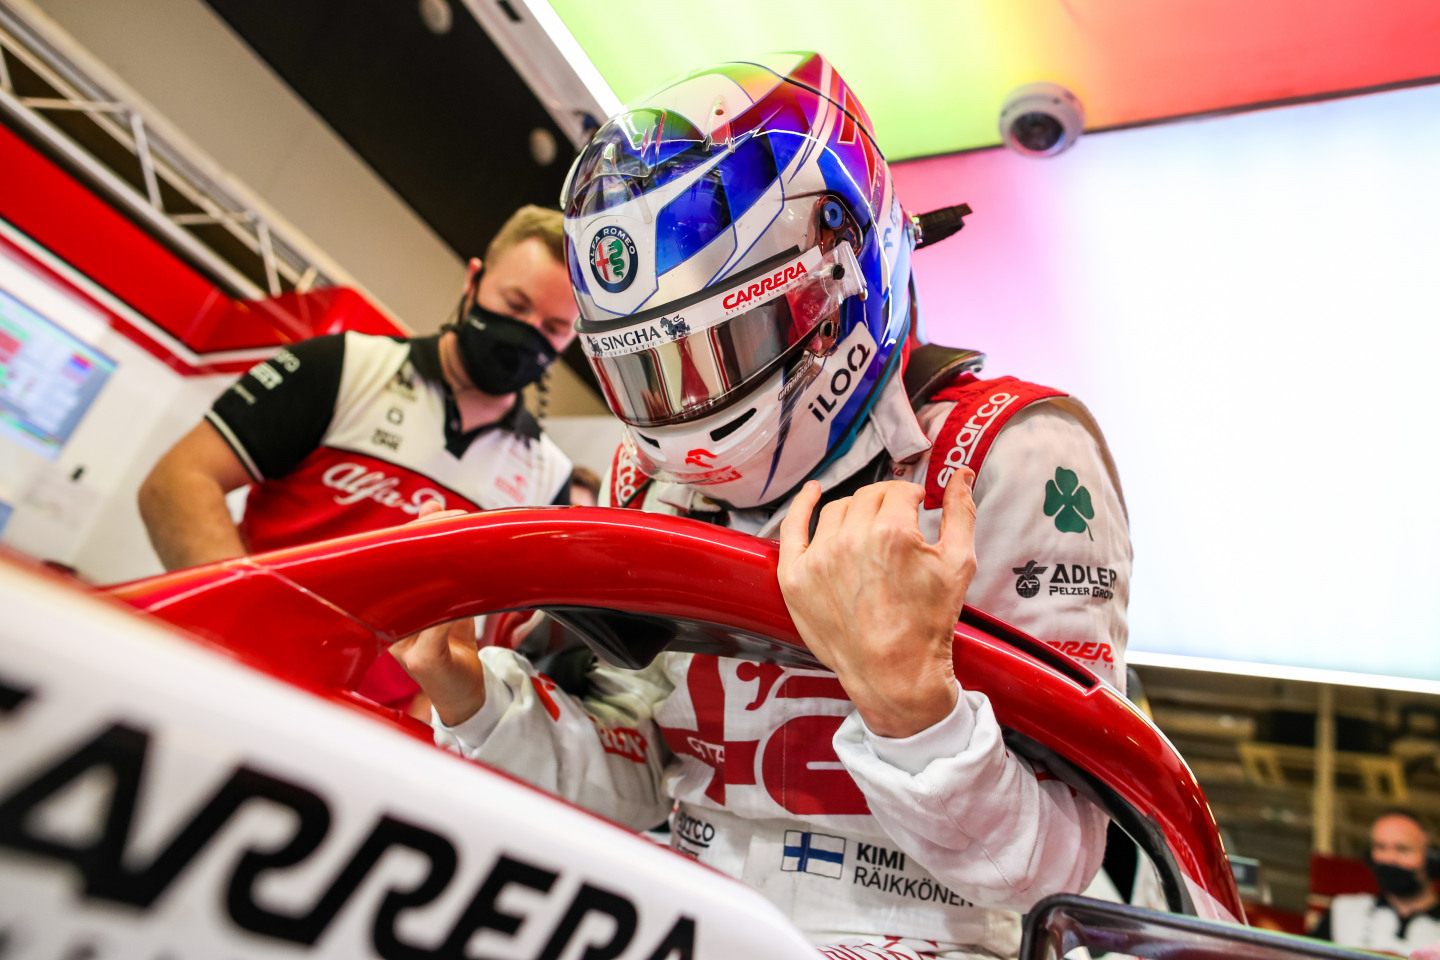 Кими Райкконен провел свой прощальный Гран При в Формуле 1 в шлеме с раритетной ливреей © Sauber Group